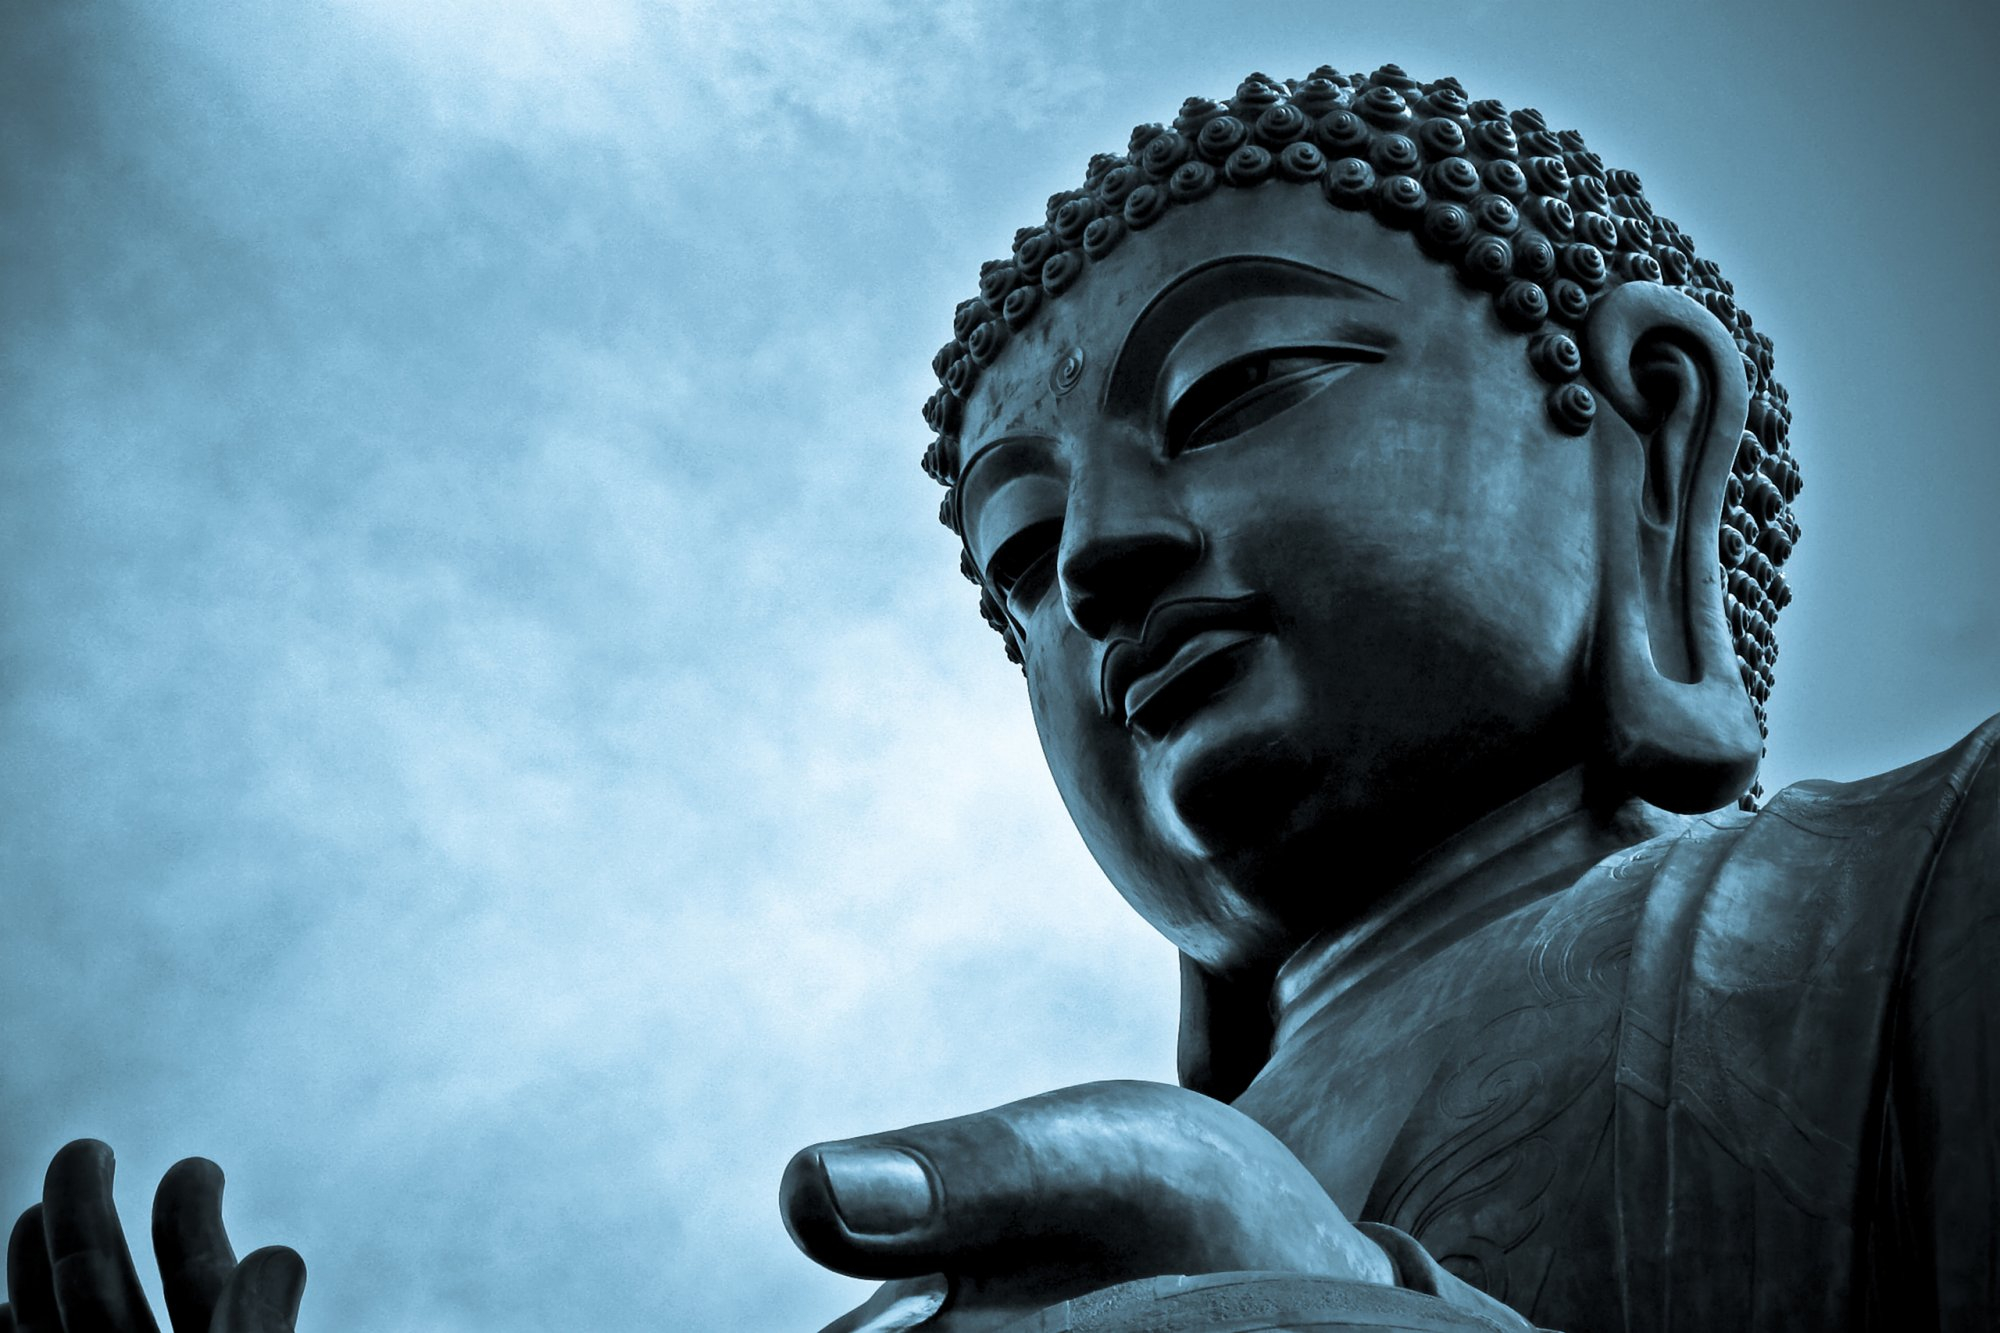 2000x1333 Zen Buddhism, Koans and Enlightenment